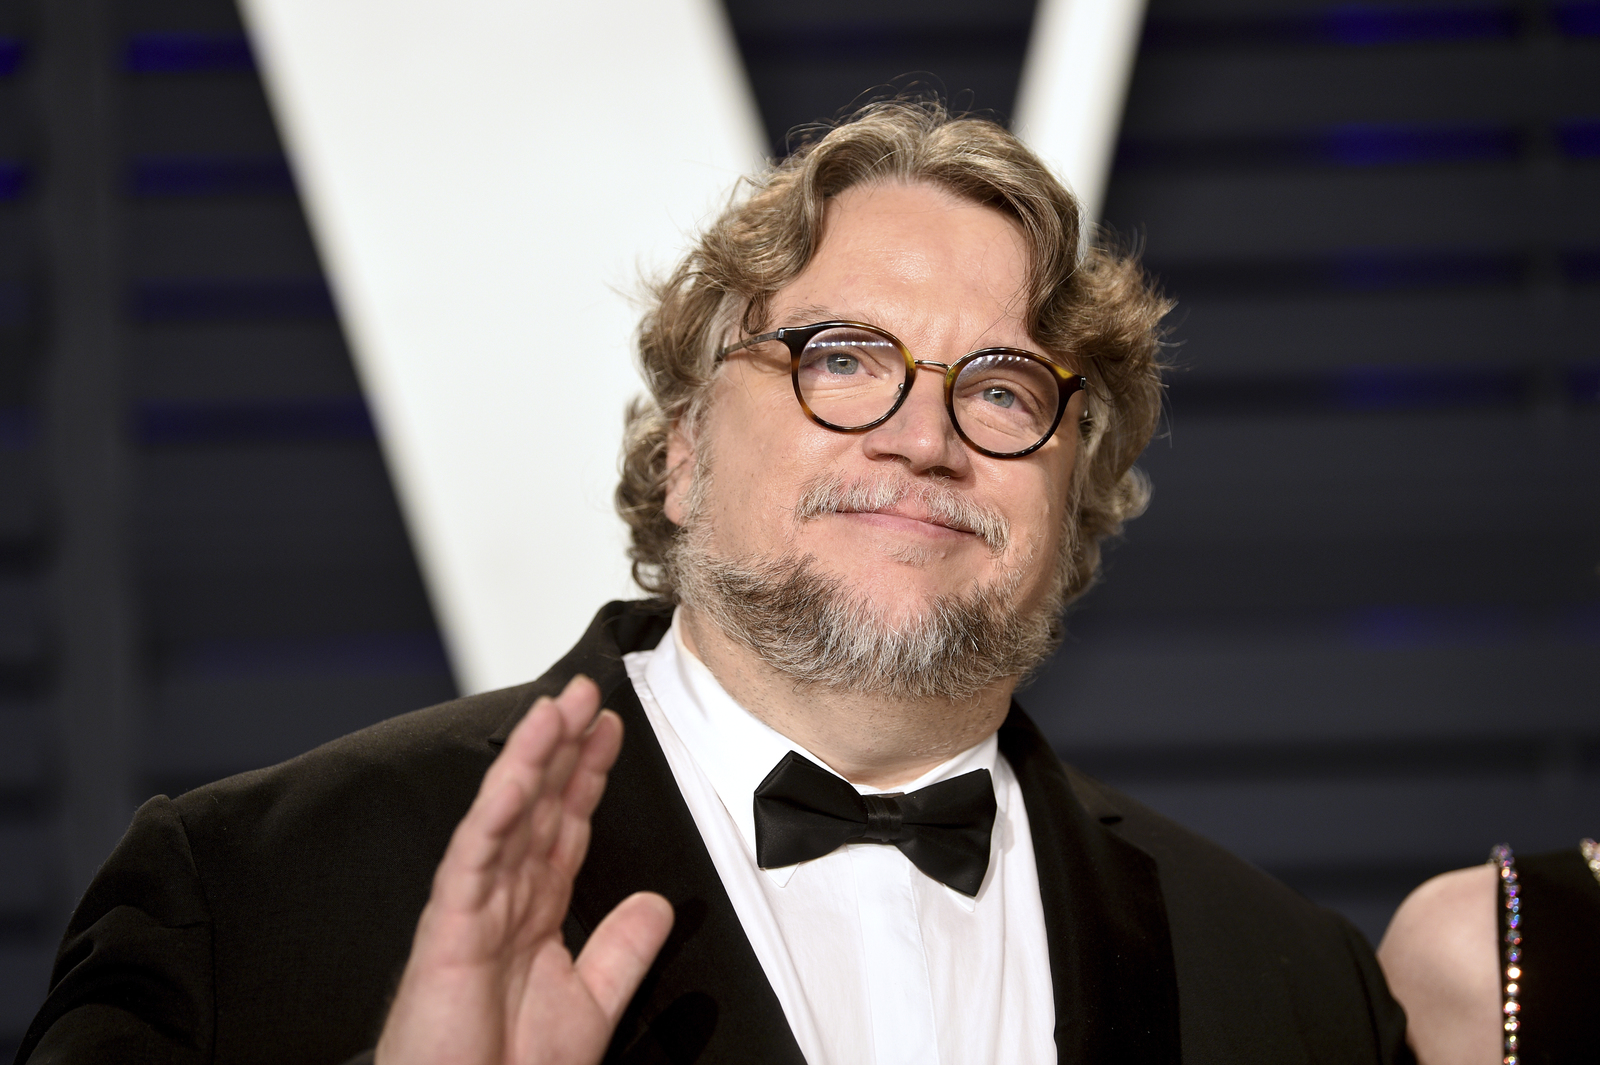 Confirmado. El cineasta mexicano Guillermo del Toro escribirá y dirigirá la película Zanbato; dio la noticia en su Twitter.